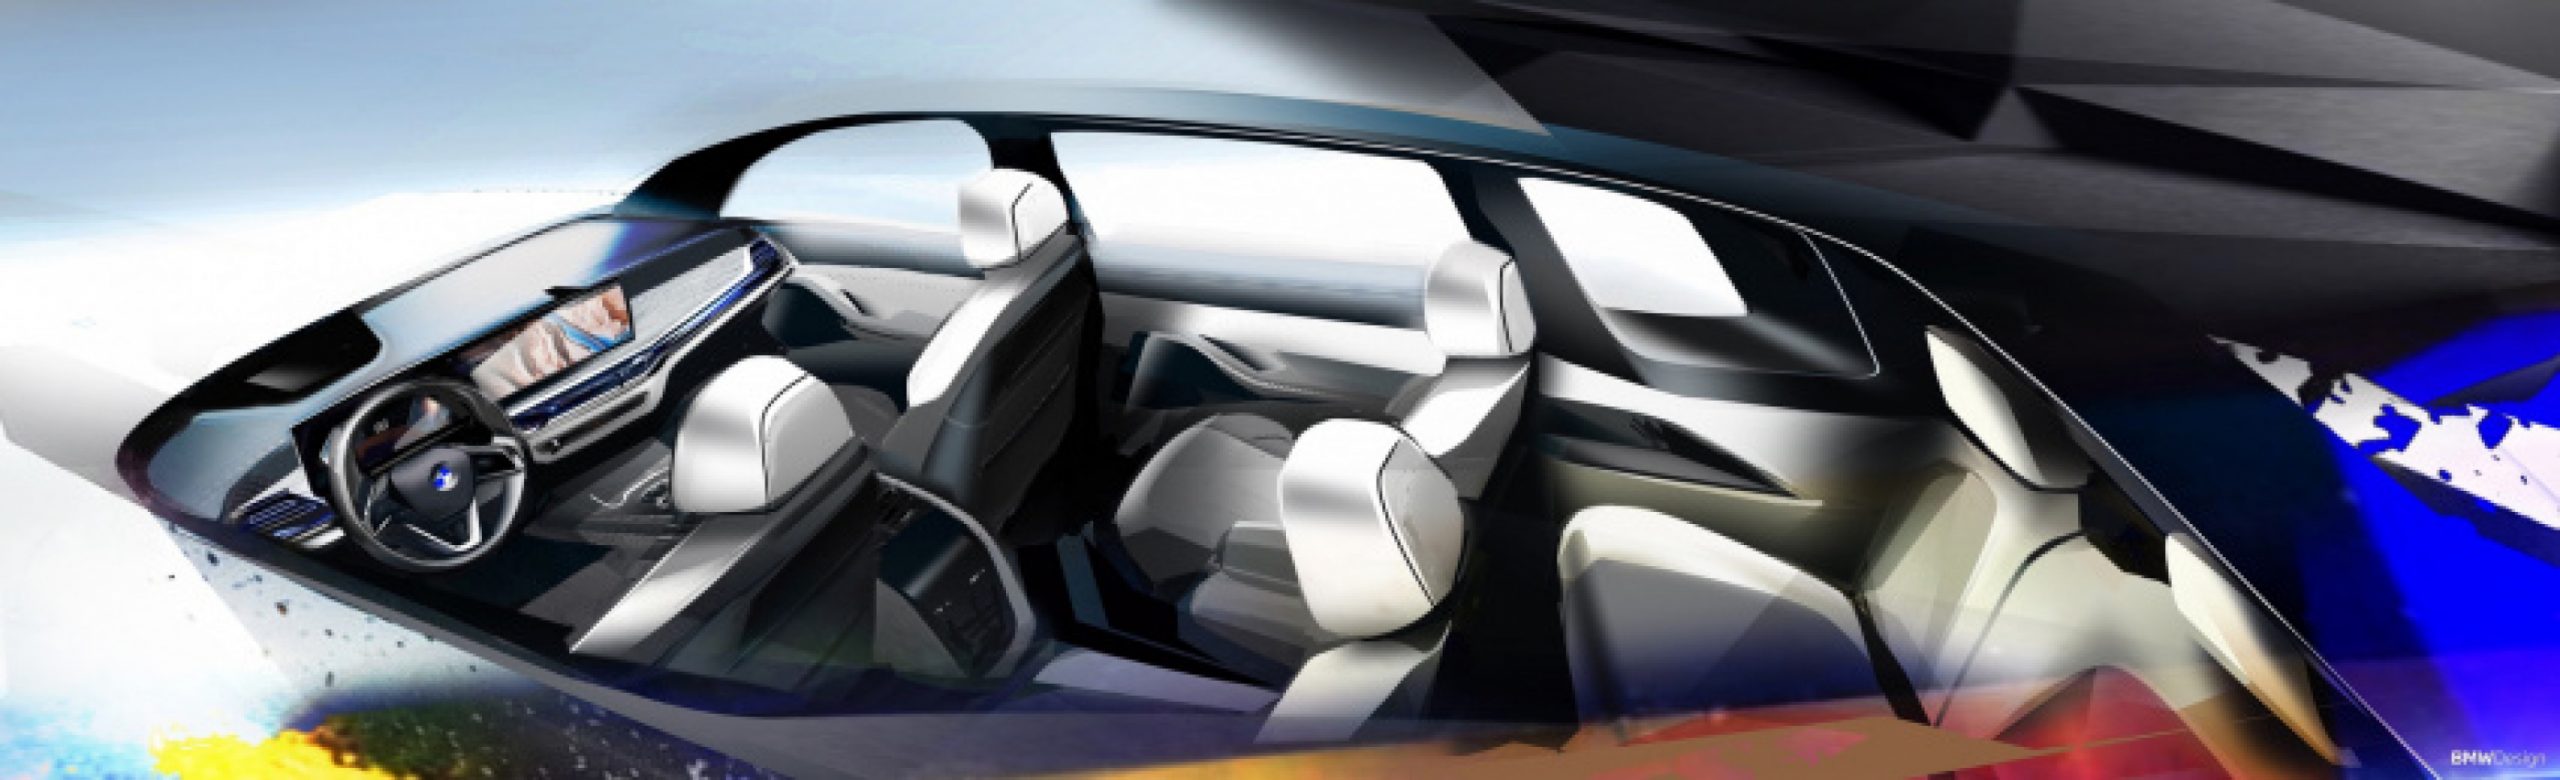 autos, bmw, cars, 2022 bmw x7, bmw x7, bmw x7 facelift, bmw x7 lci, world premiere: bmw x7 facelift — split headlights and new engine